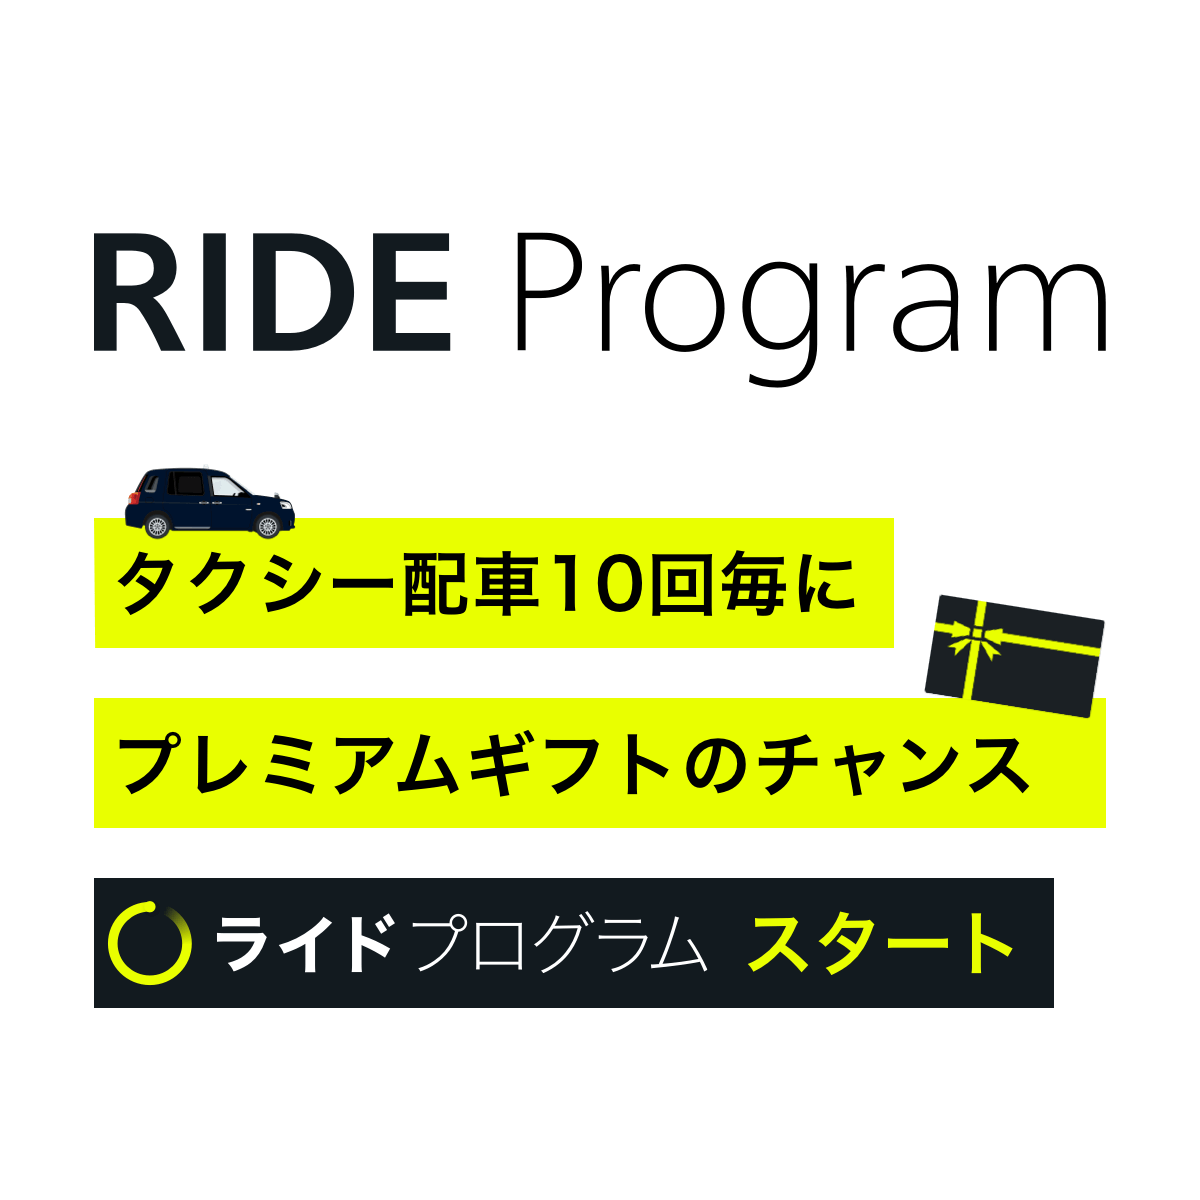 タクシーアプリS.RIDE［エスライド］のライドプログラム